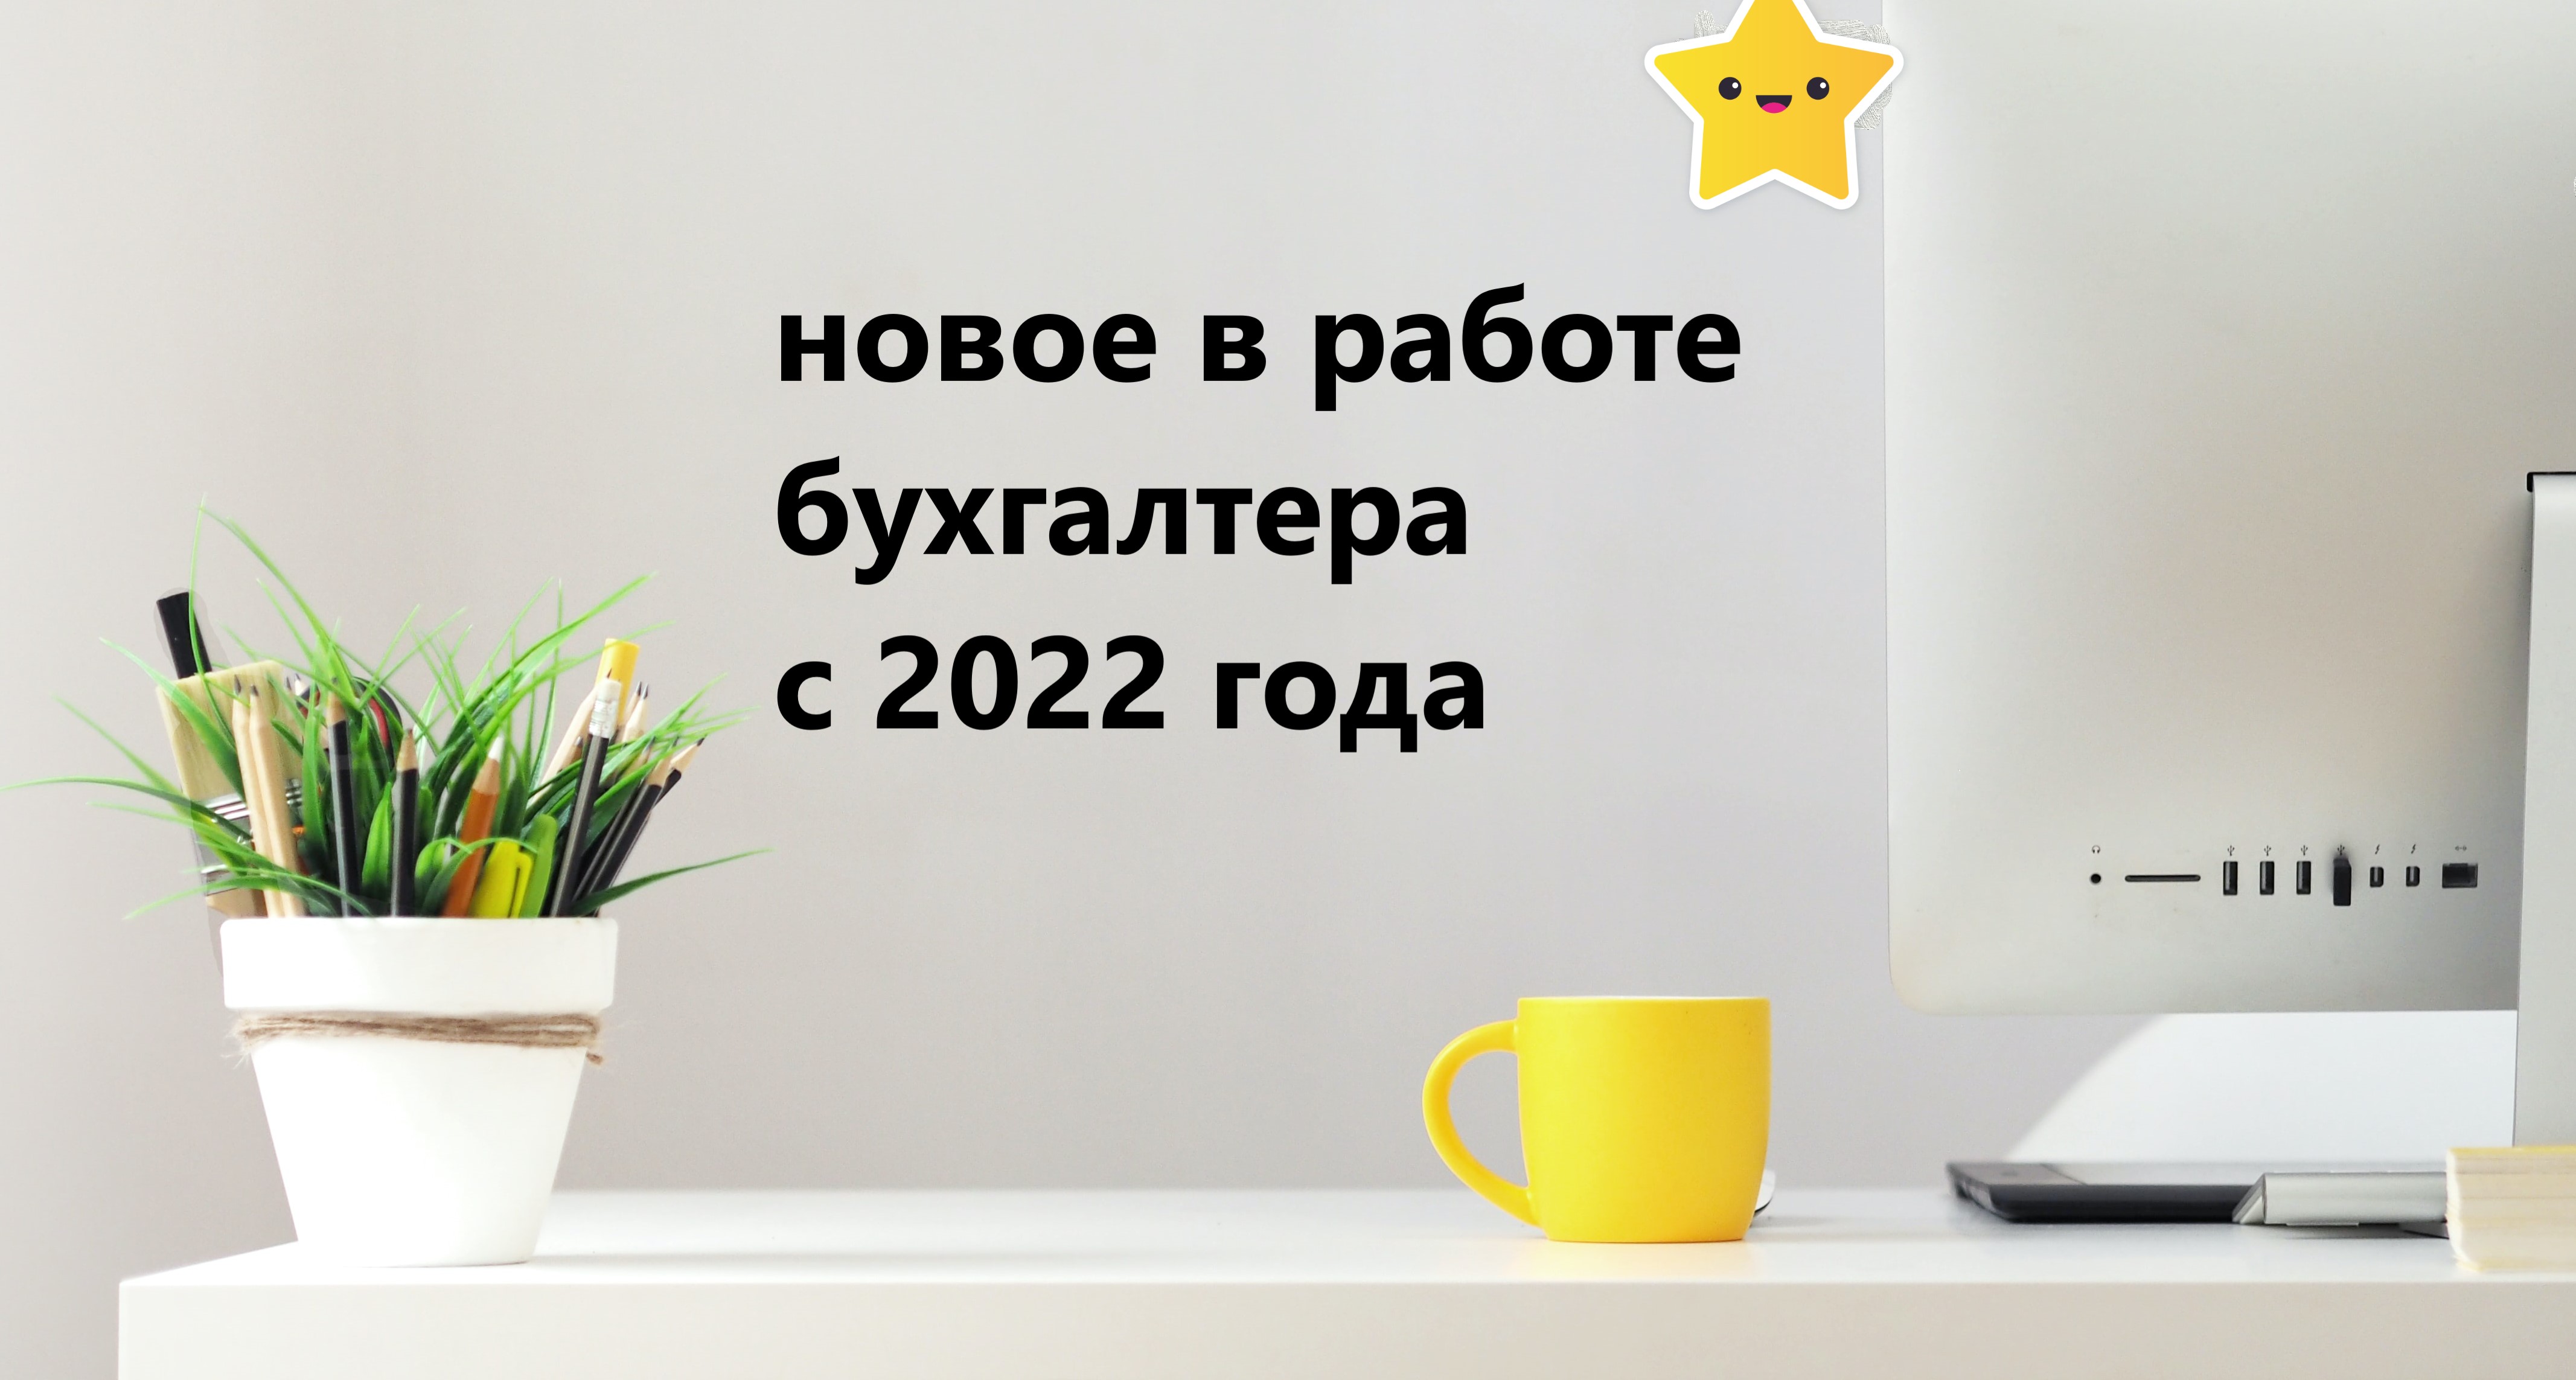 Продажа Через Интернет Магазин Налогообложение 2022